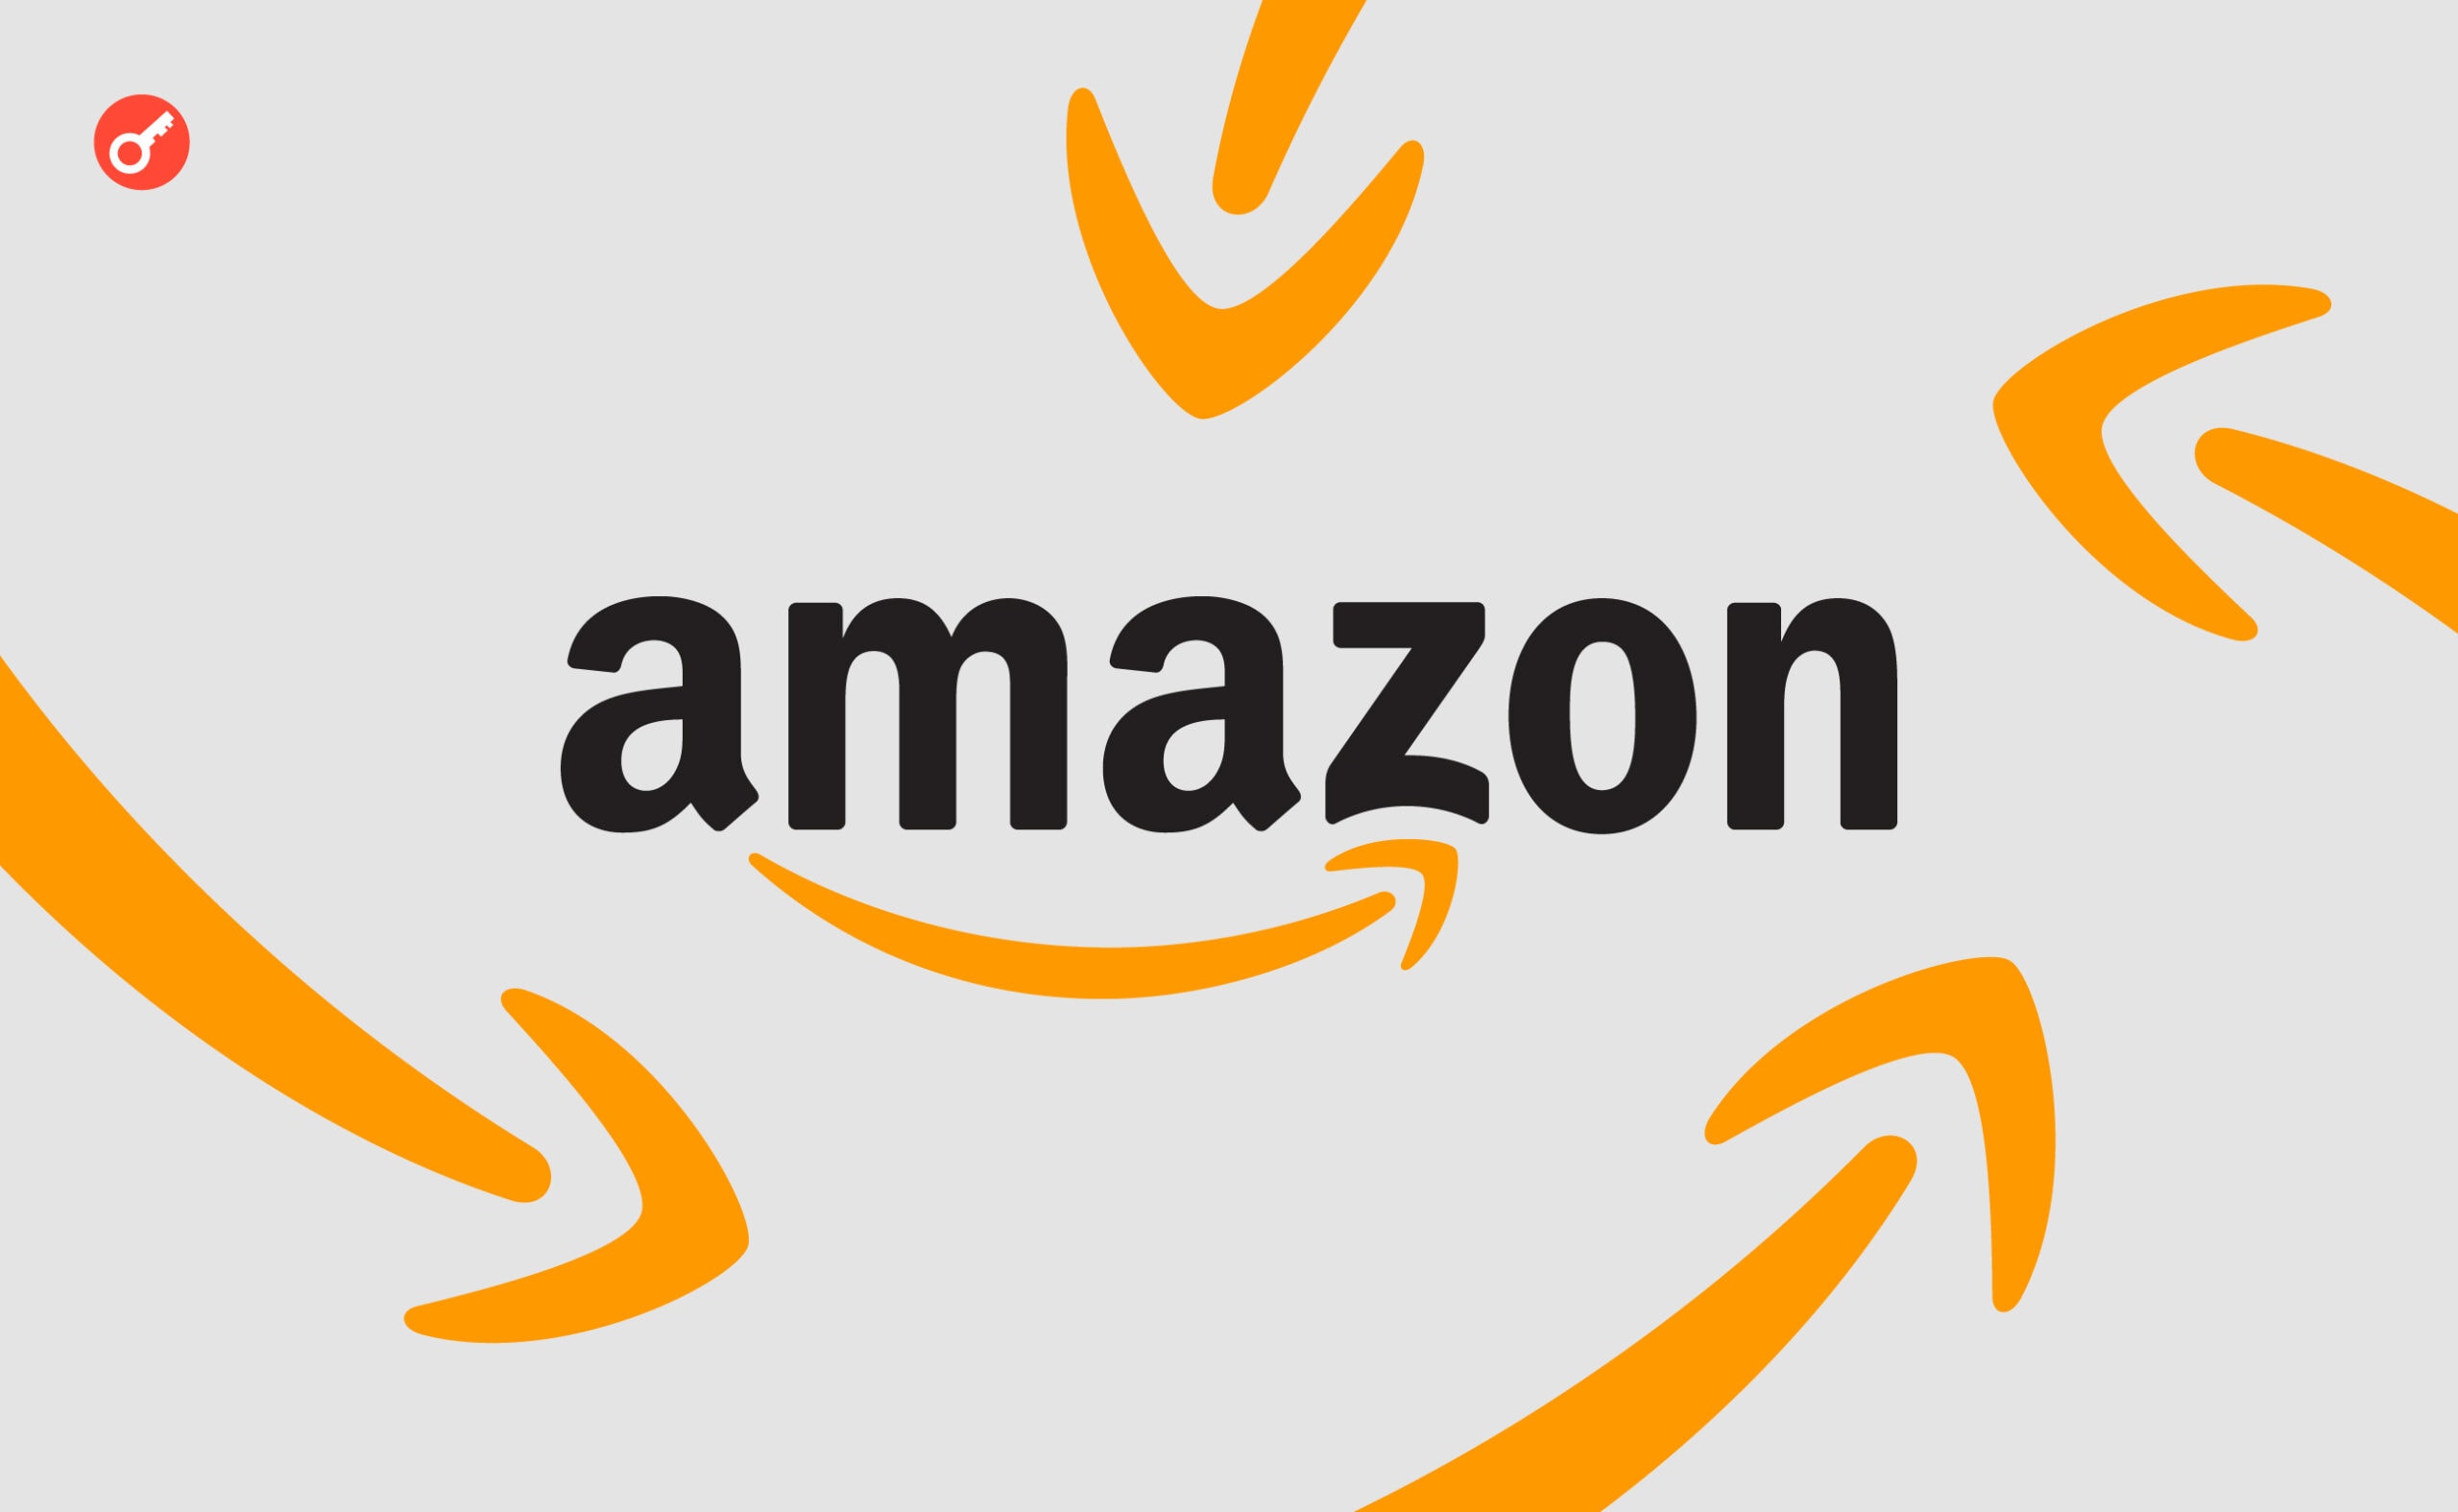 Amazon інвестує $100 млн у програму розвитку ШІ. Головний колаж новини.